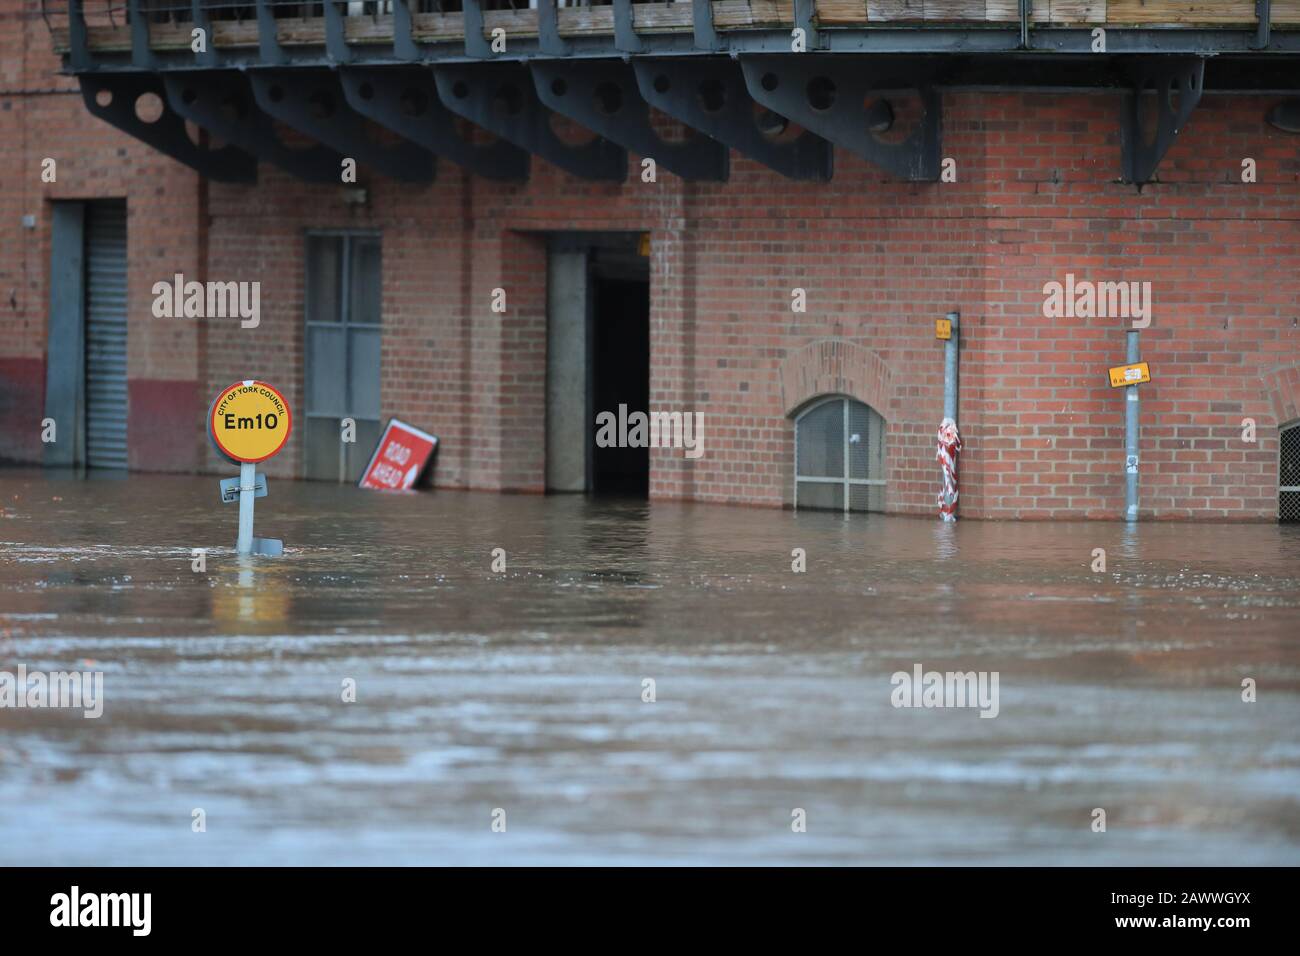 Le acque alluvionali di York dopo il fiume Ouse hanno fatto esplodere le sue rive dopo la tempesta Ciara che ha devastato il paese domenica. Foto Stock